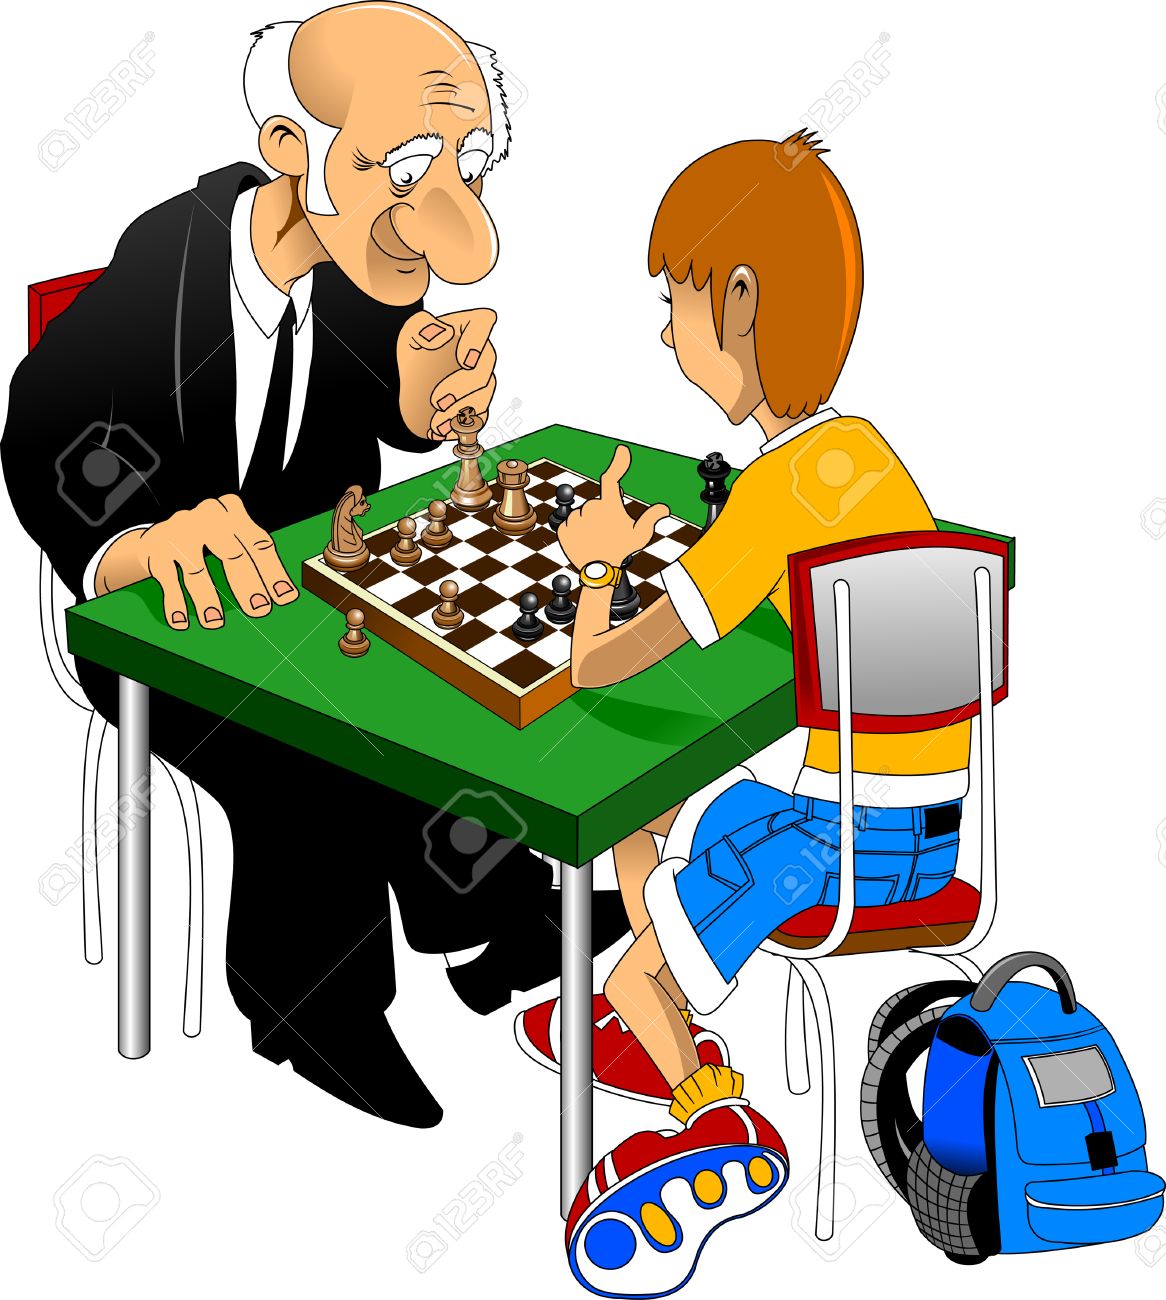 Дед с внуком играют в шашки. Шахматист мультяшный. Профессия - шахматист. Дед и шахматы. Шахматист мультяш.